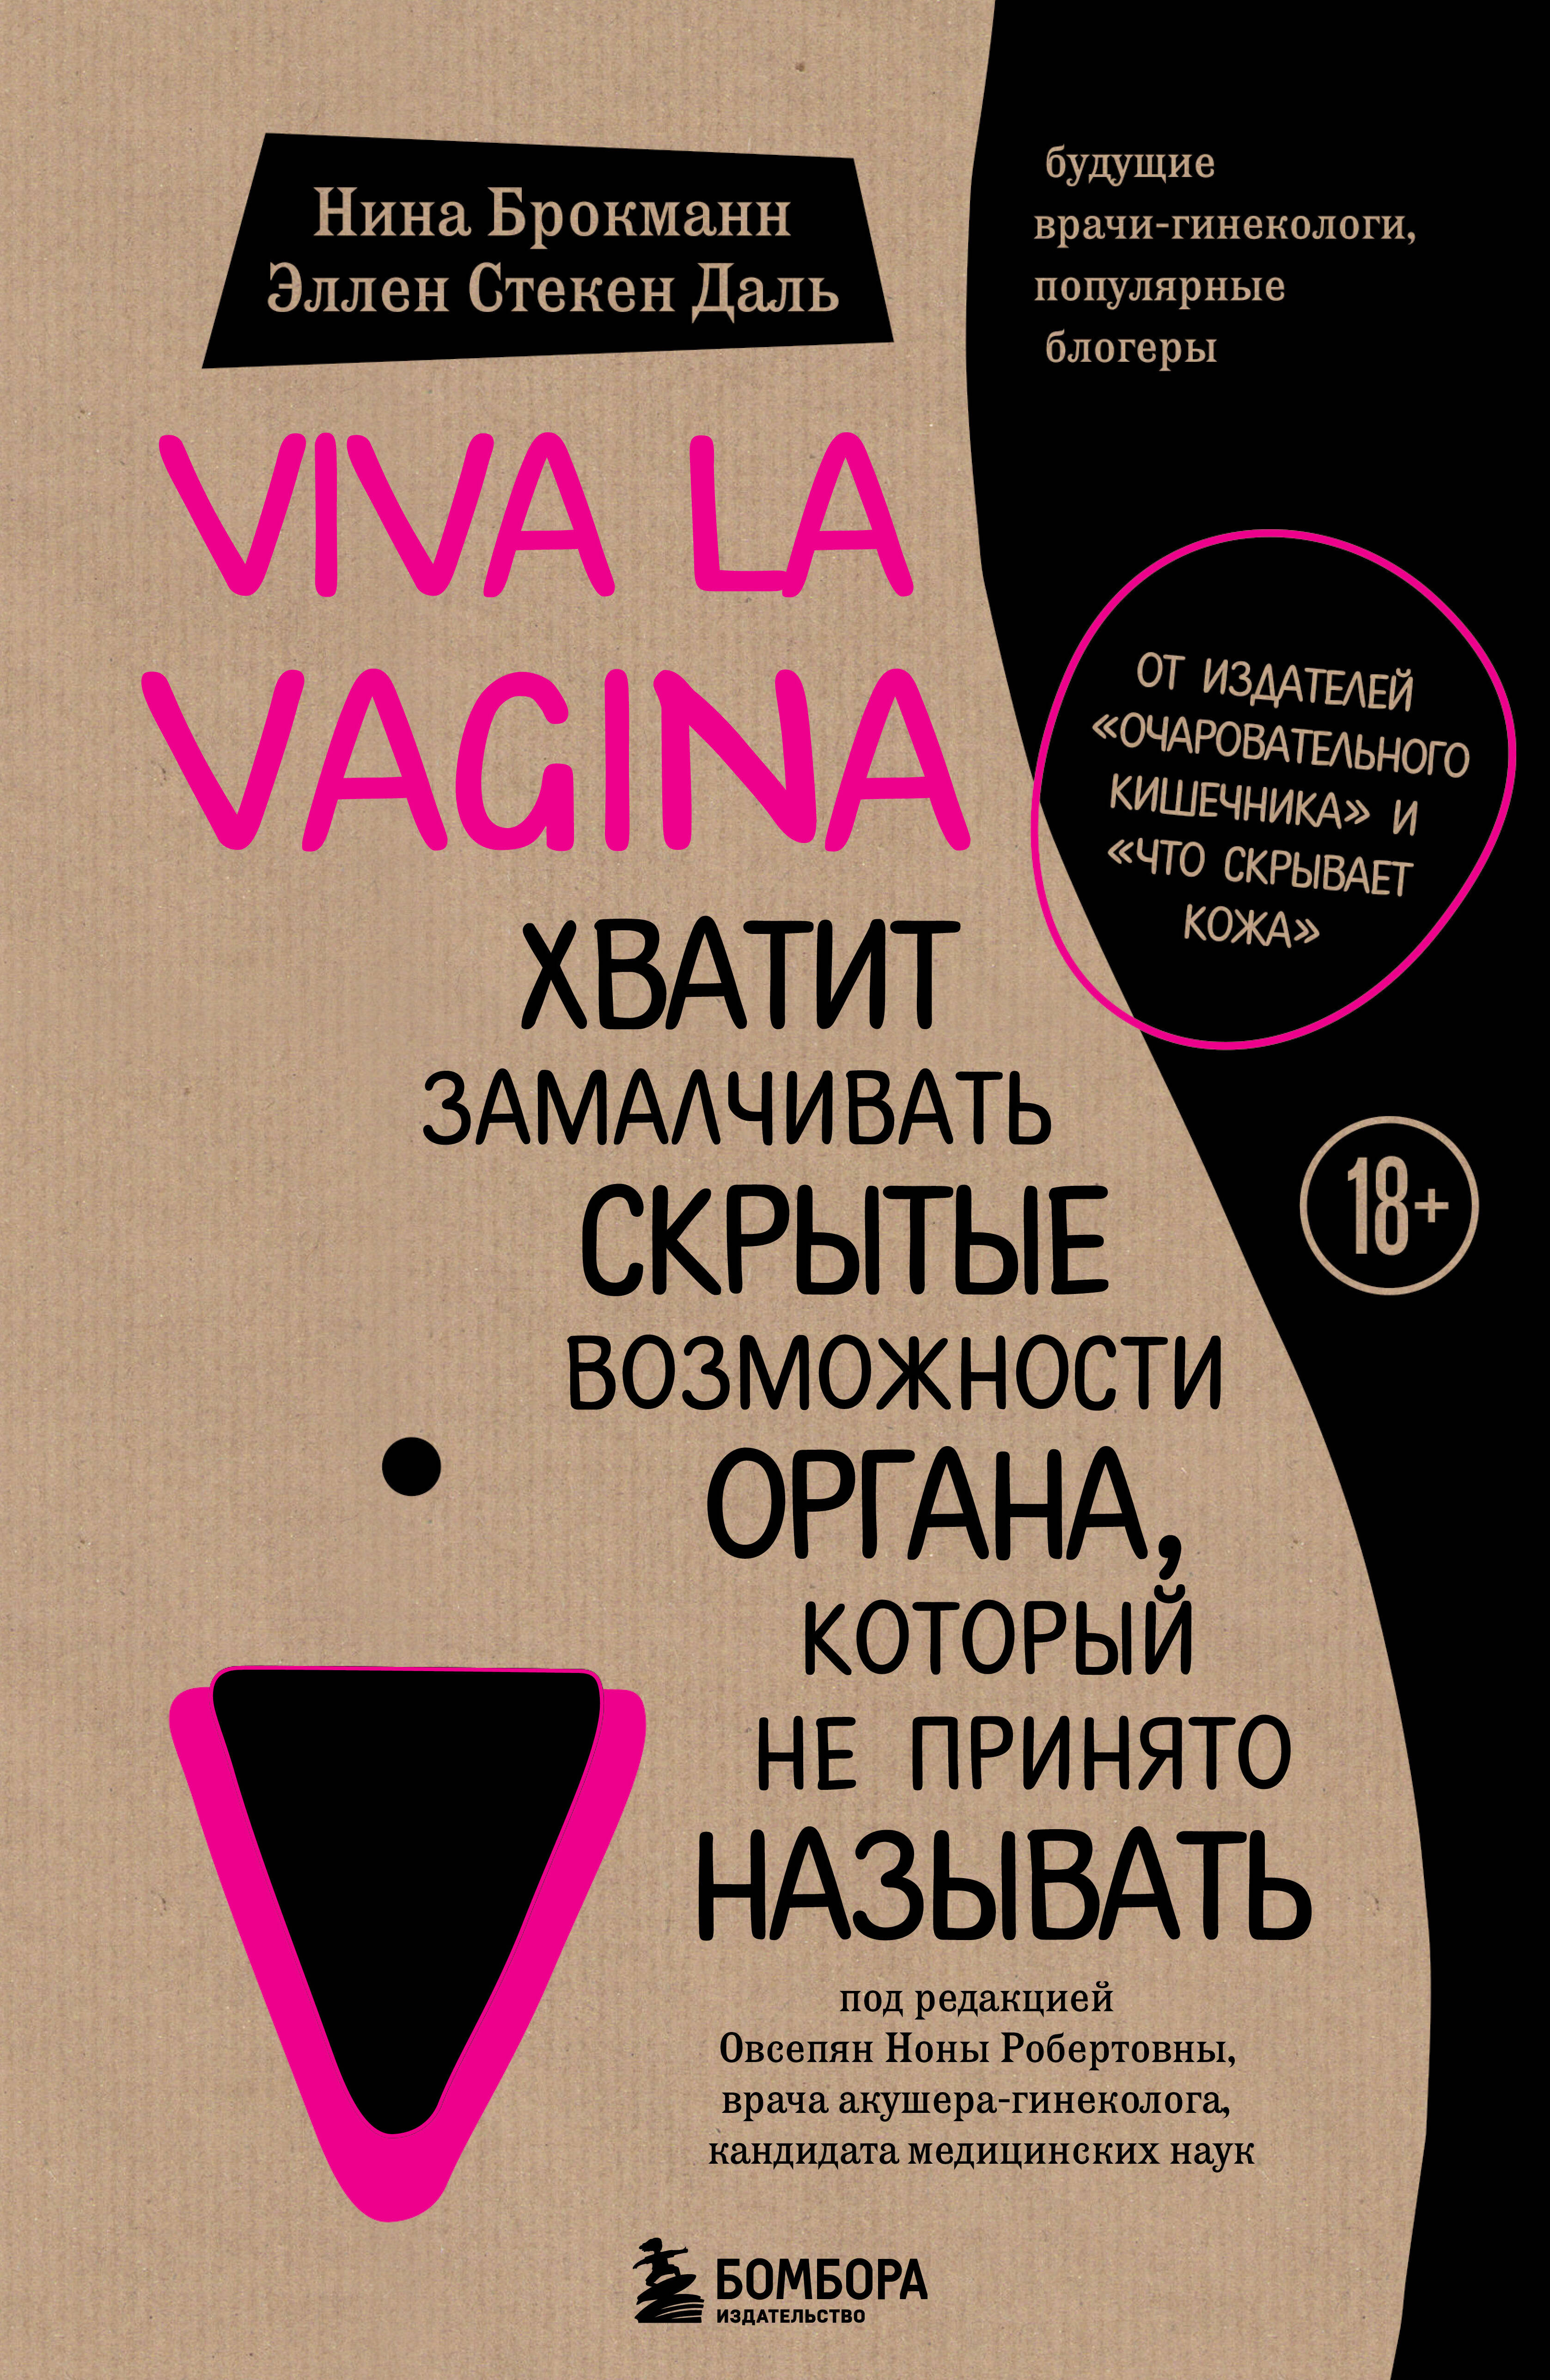 Viva la vagina.     ,    